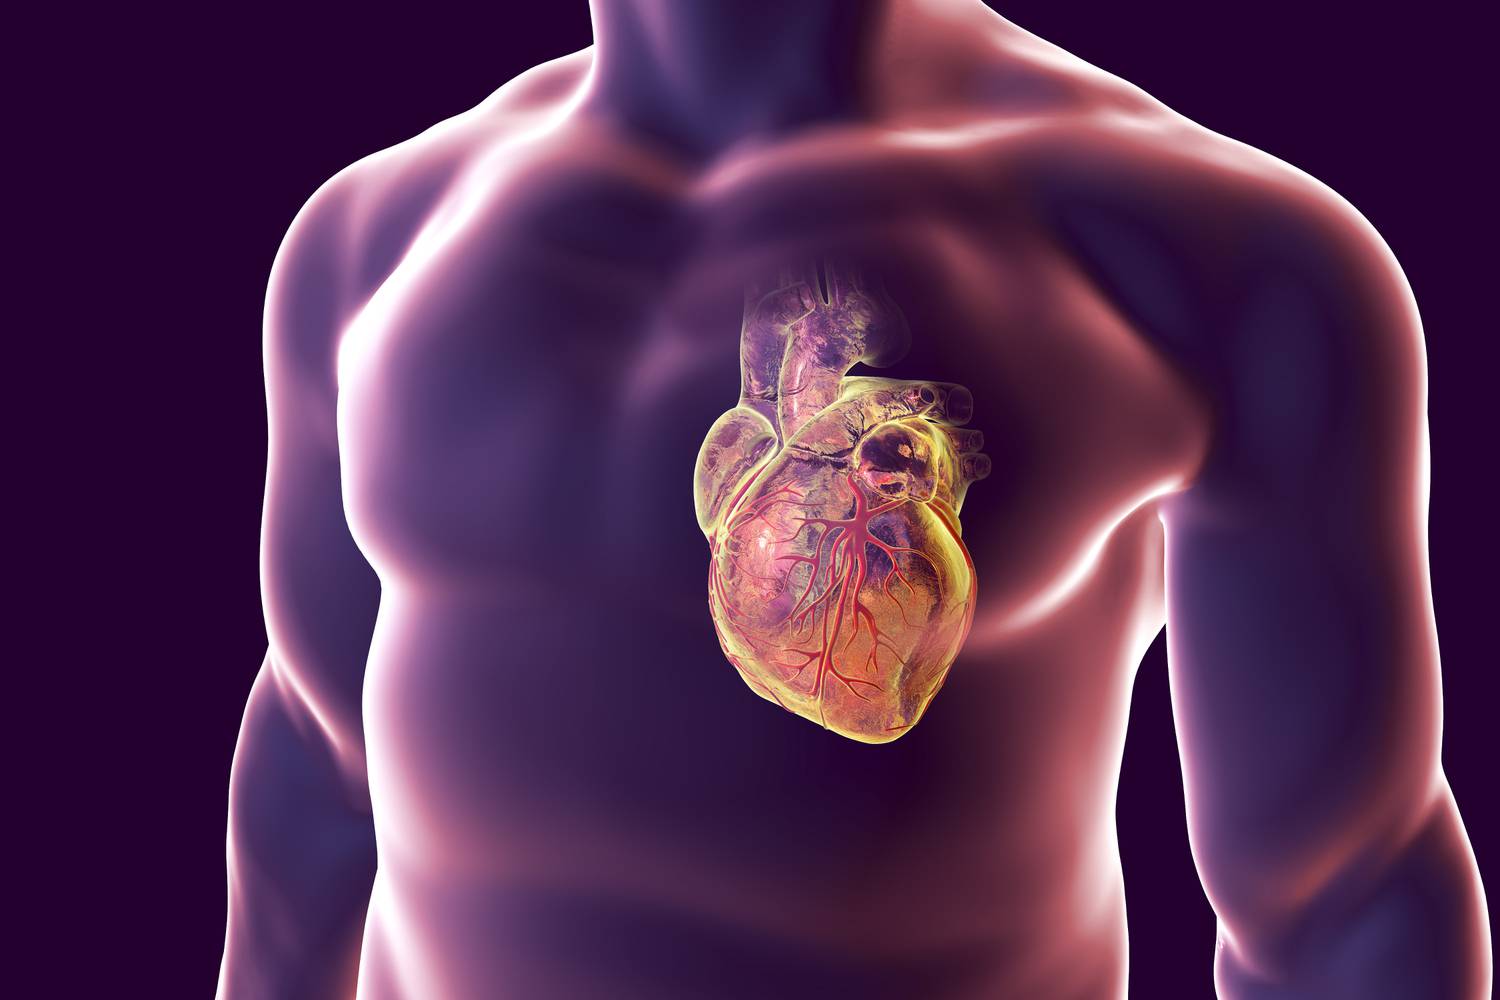 elképesztő tények a szív egészségéről és betegségeiről